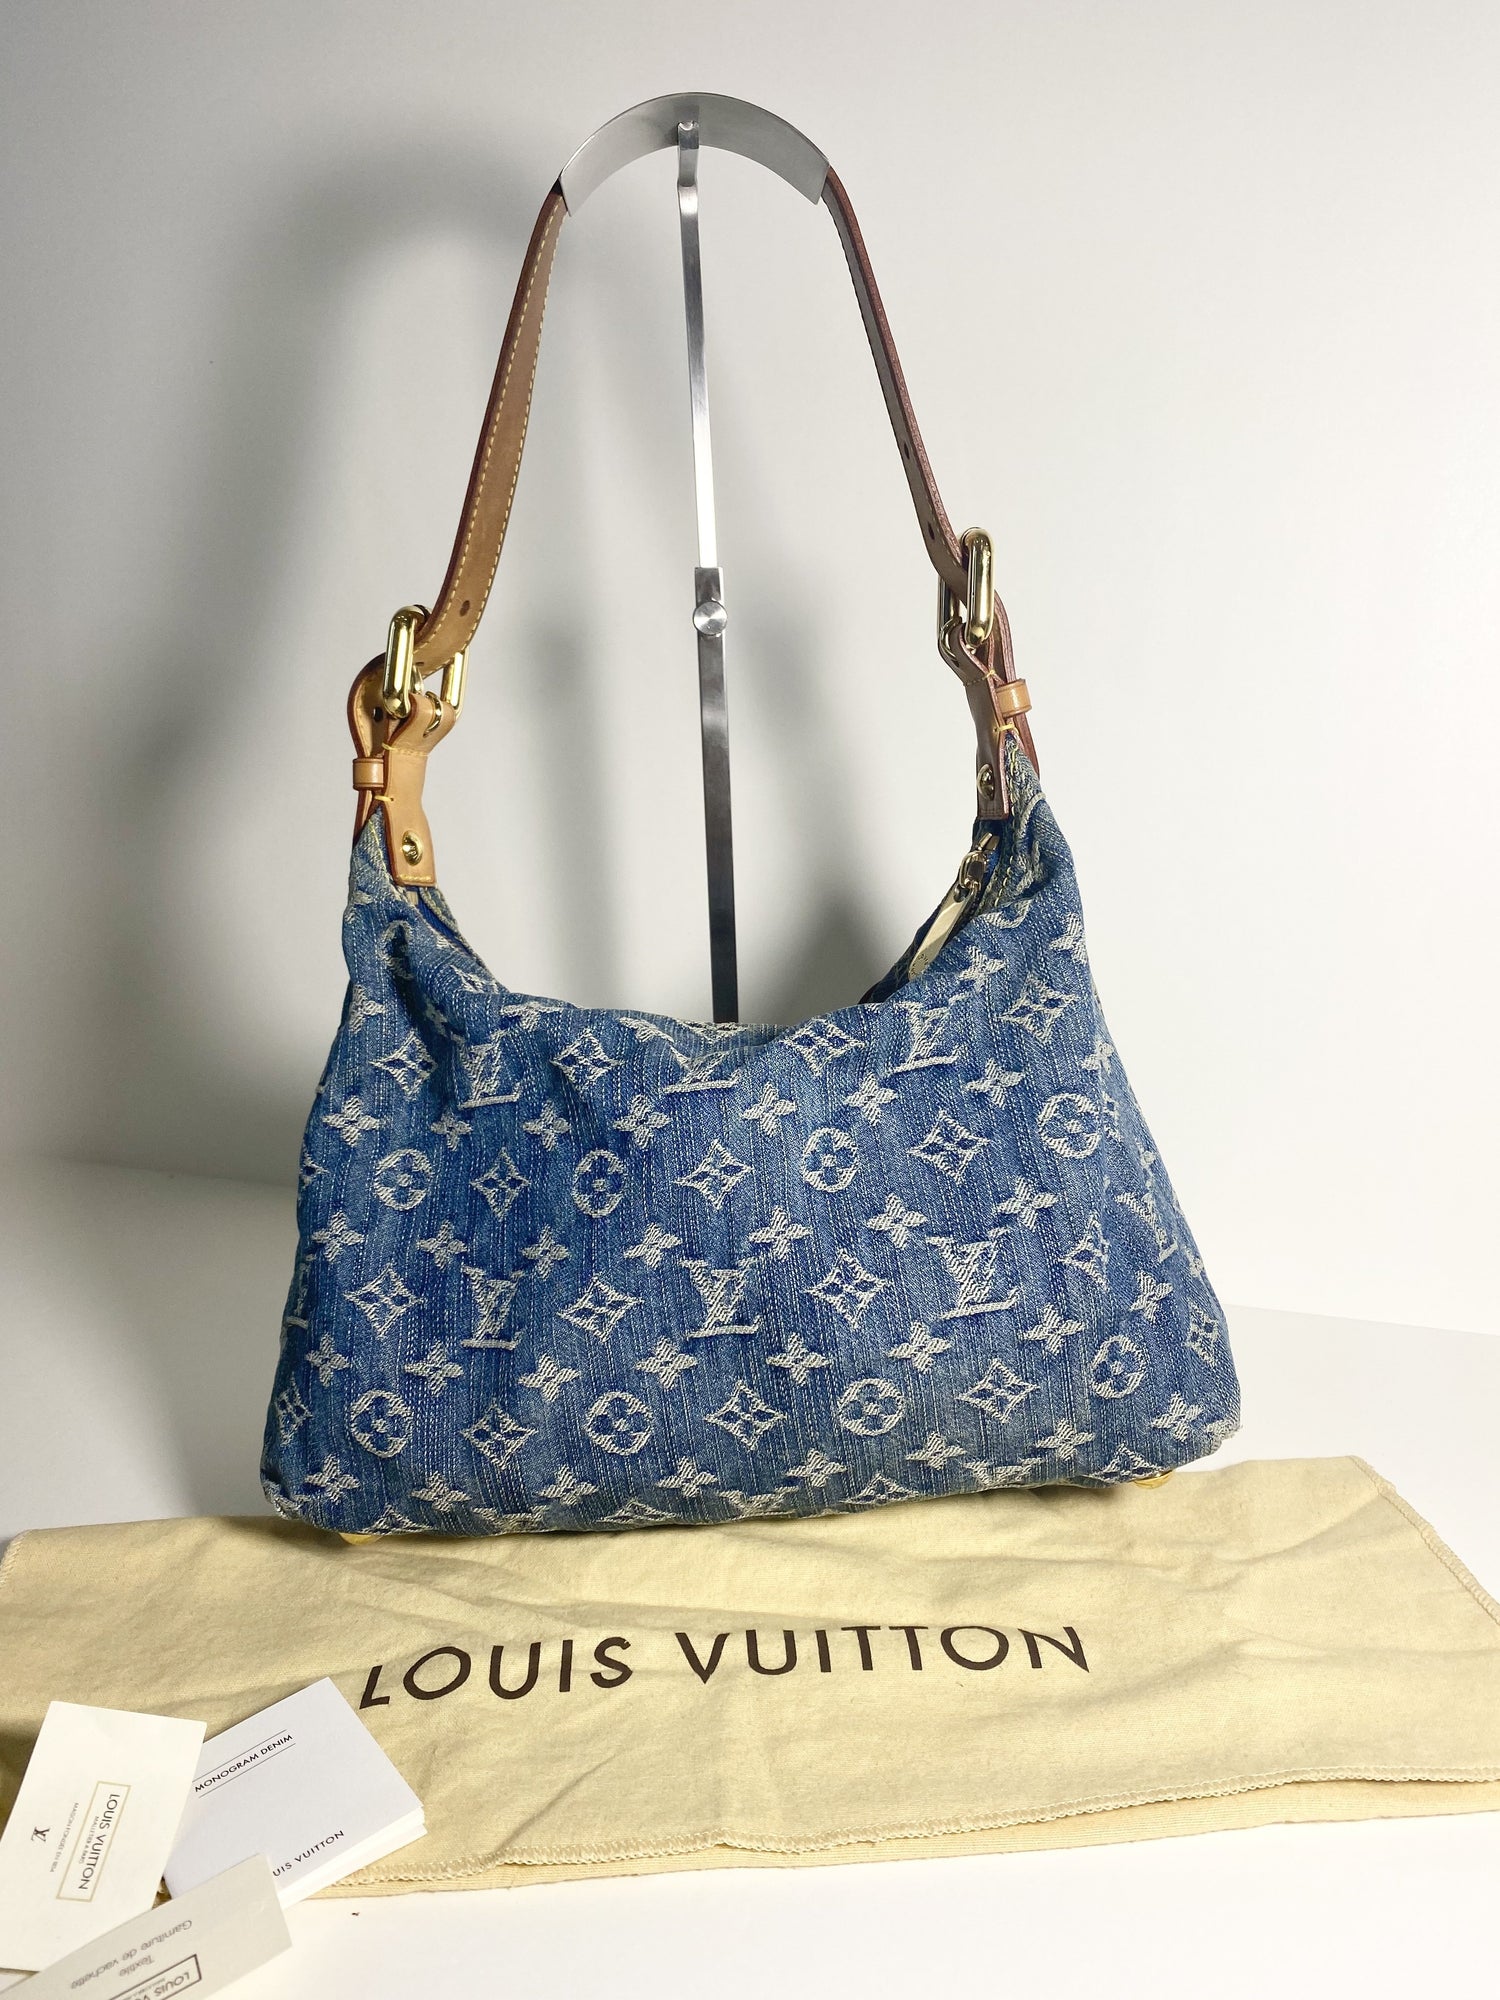 Louis Vuitton Baggy PM Monogram Denim Shoulder Bag on SALE